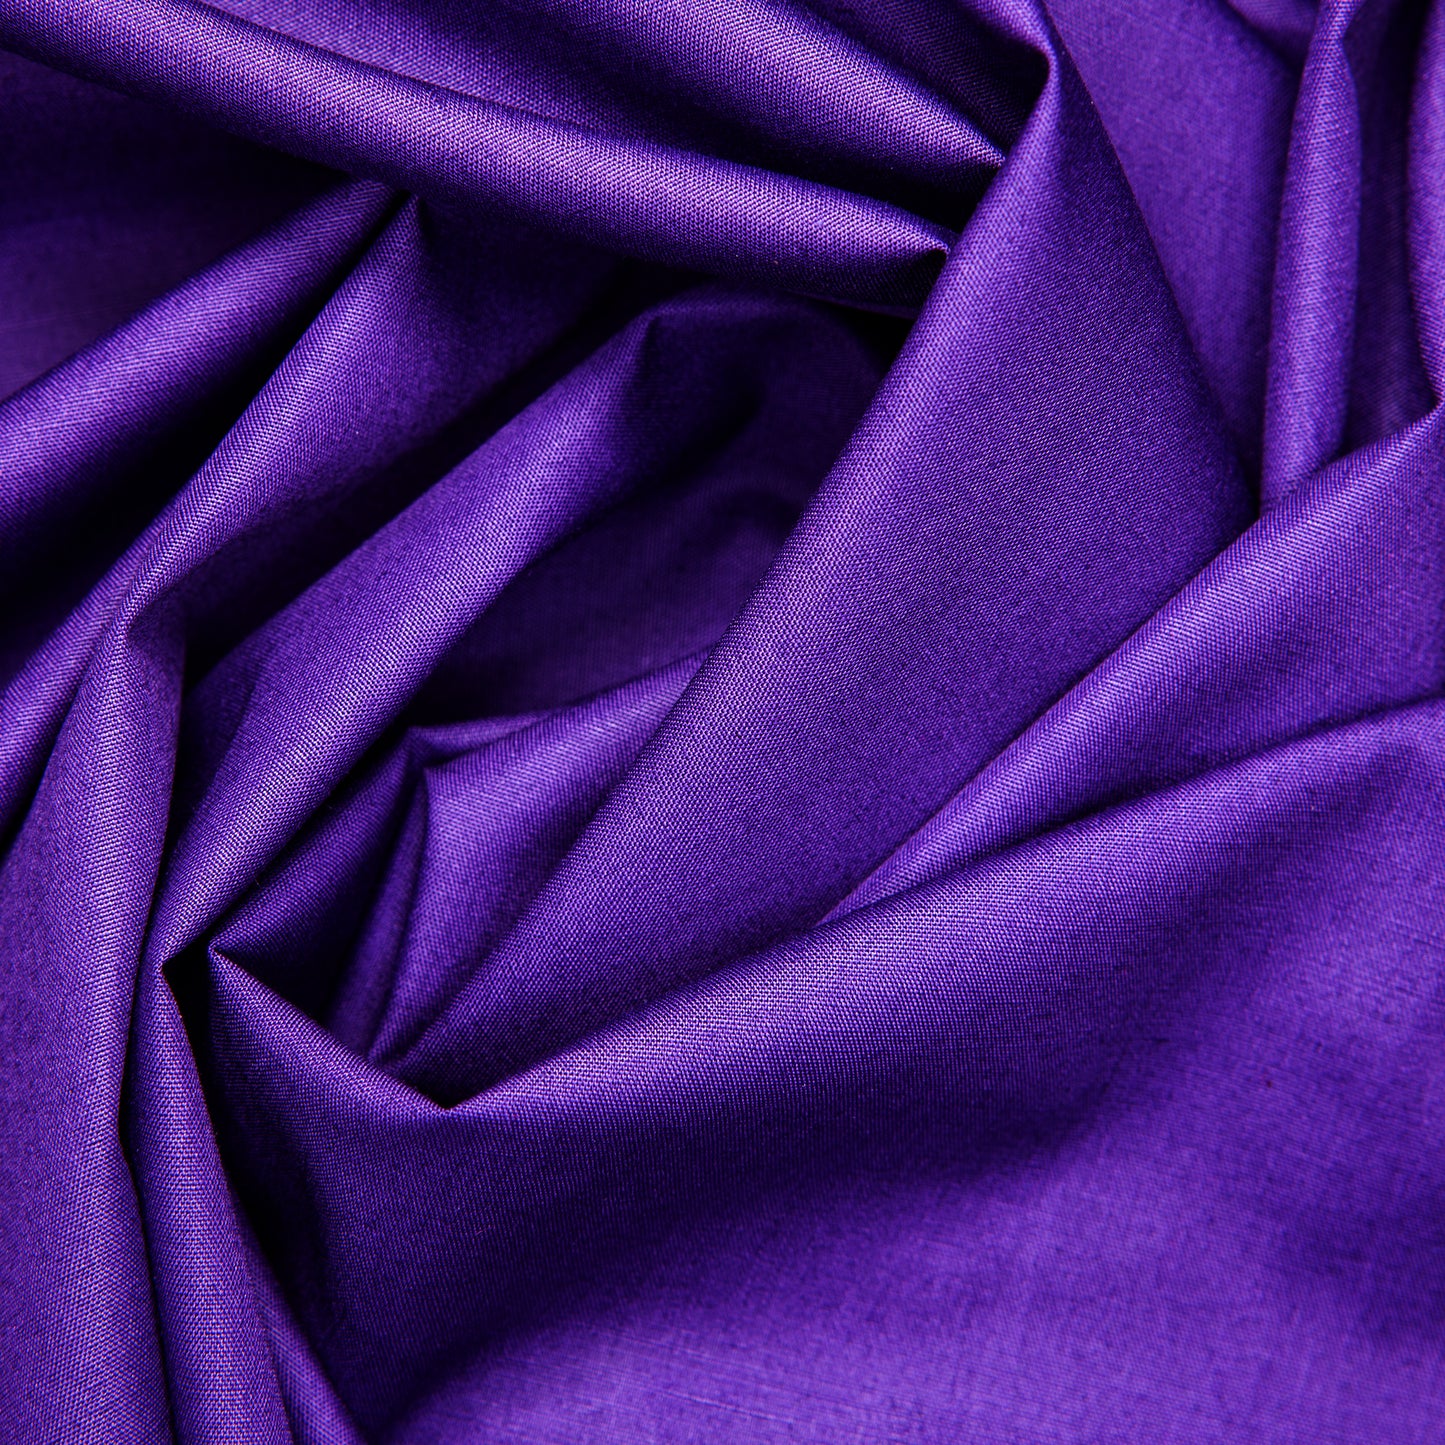 Cotton - Solid - Purple (detail)